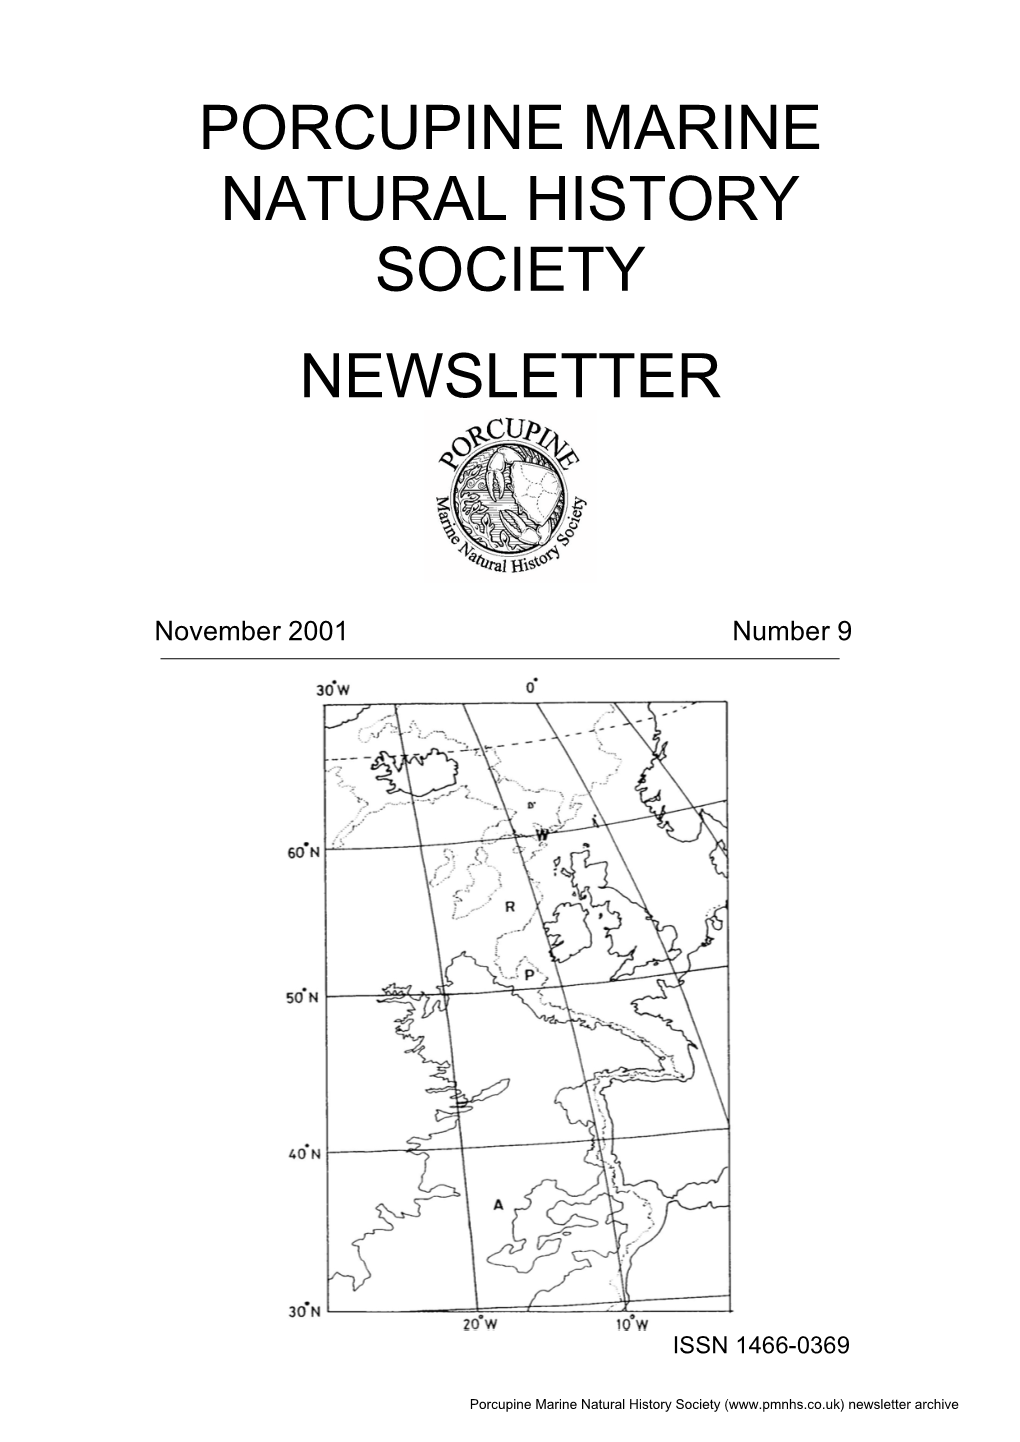 Porcupine Newsletter Number 9, November 2001